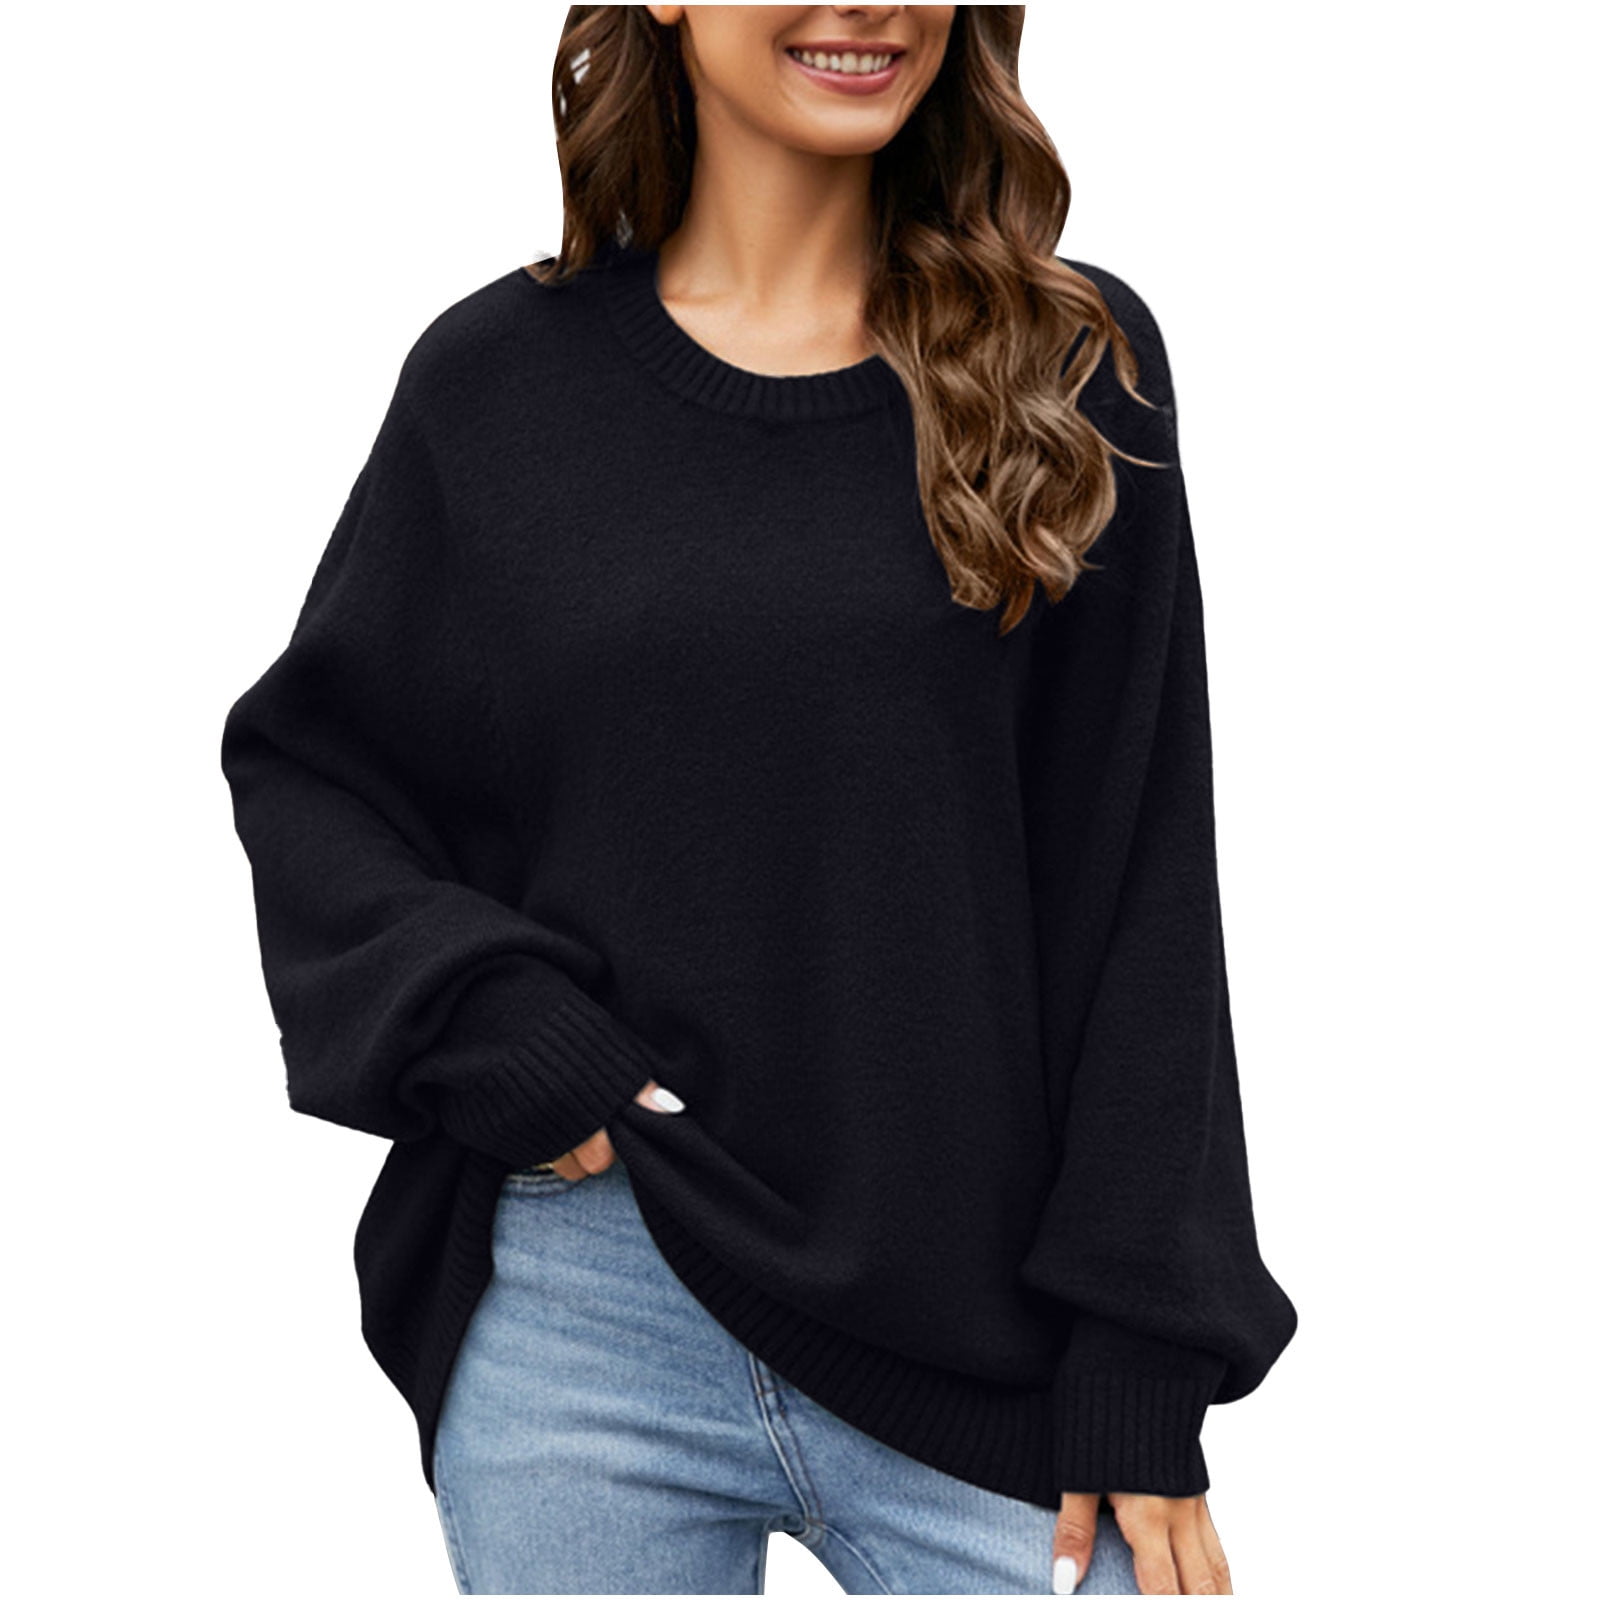 Yyeselk Oversized Sweaters for Women Casual Long Sleeve Drop